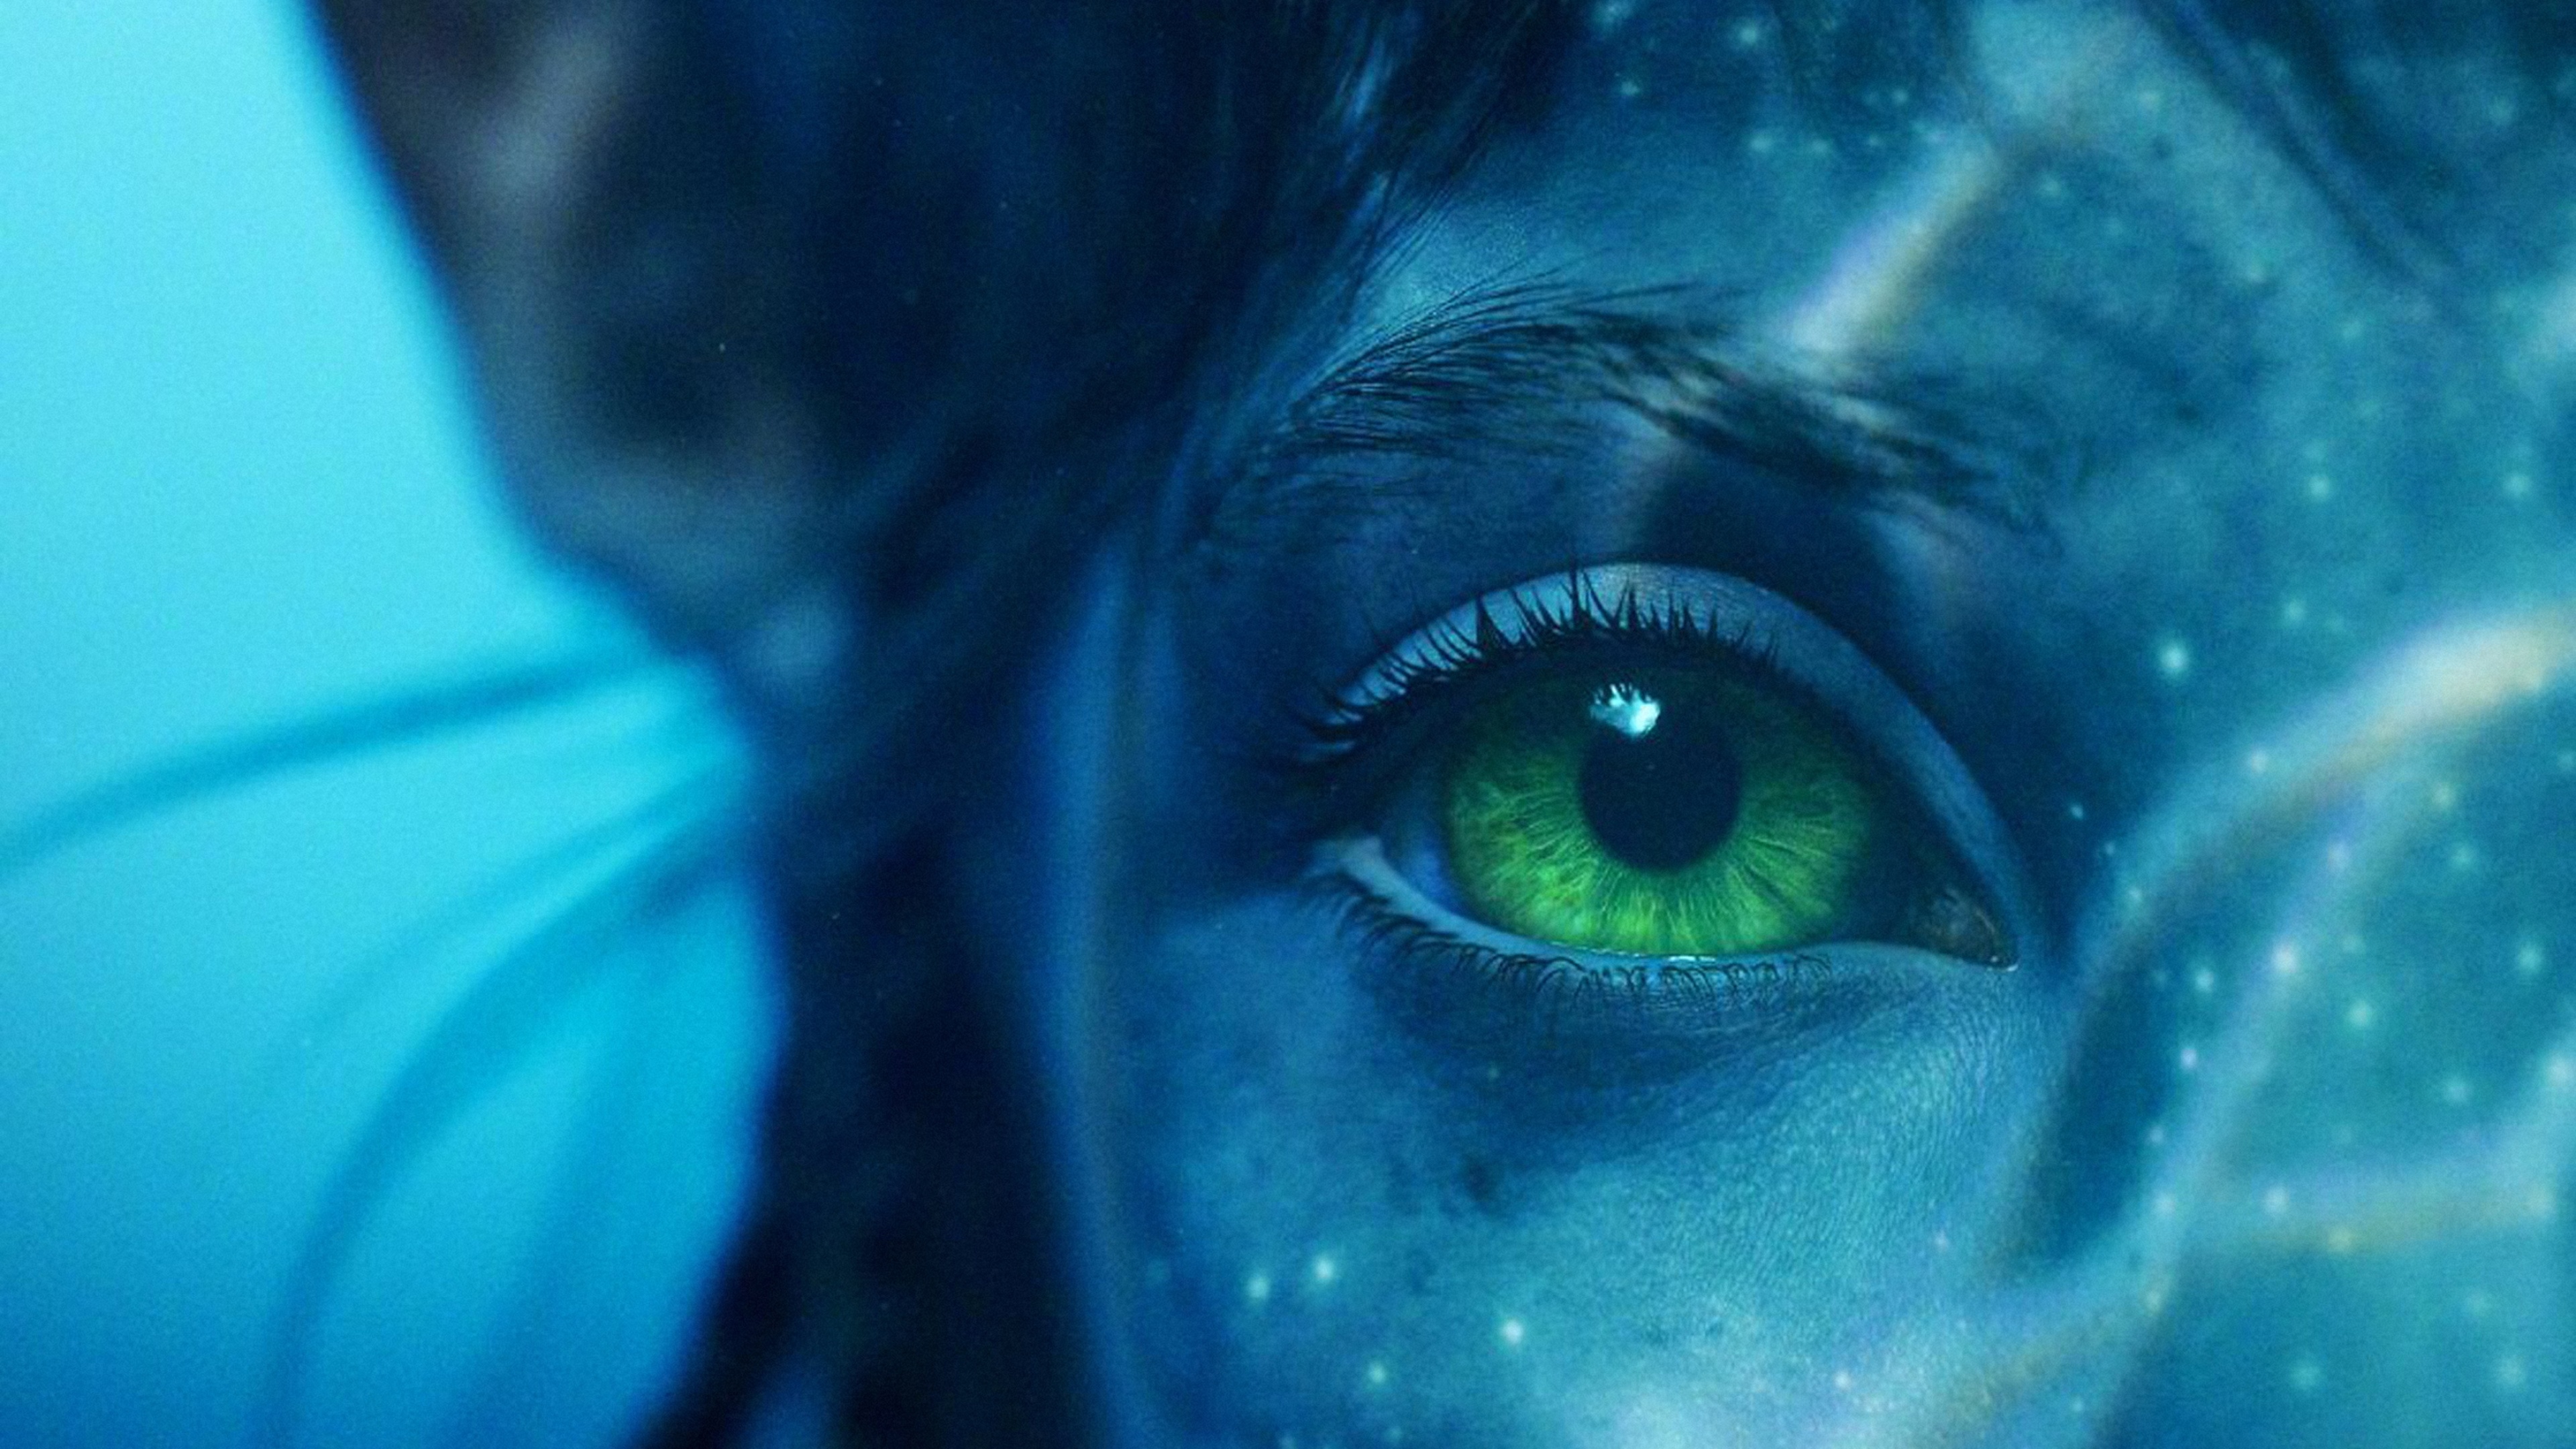 Avatar: The Way of Water Wallpaper 4K, Neytiri, 2022 Movies, Movies, #7949